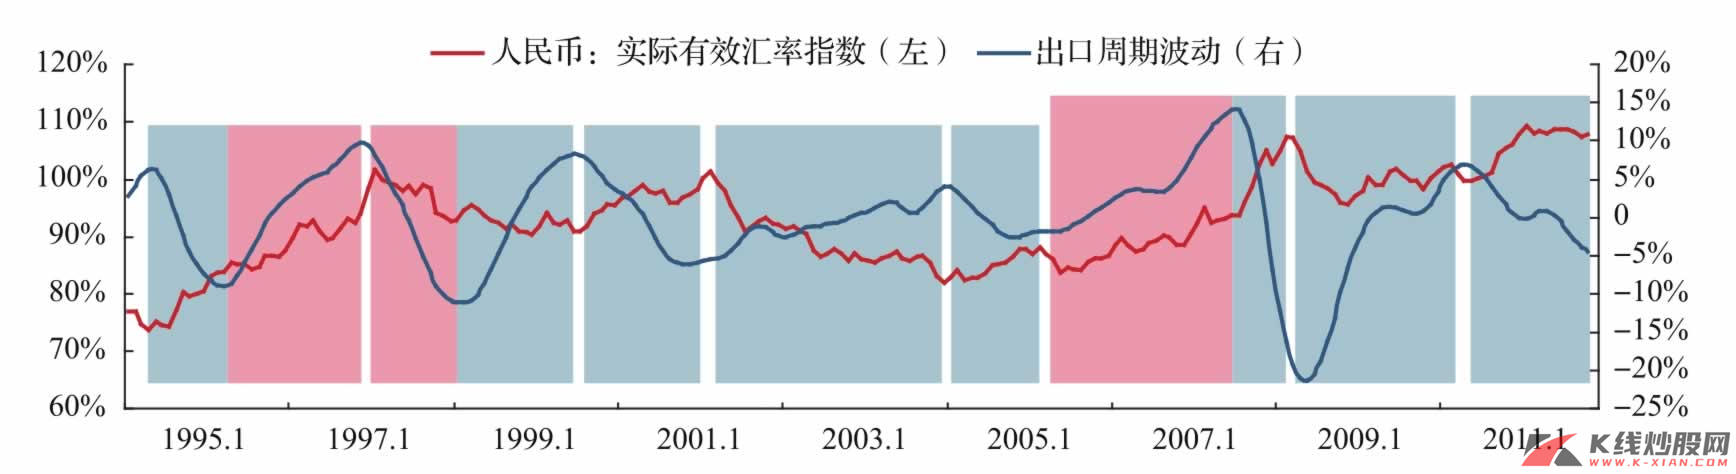 人民币有效汇率指数VS中国出口周期